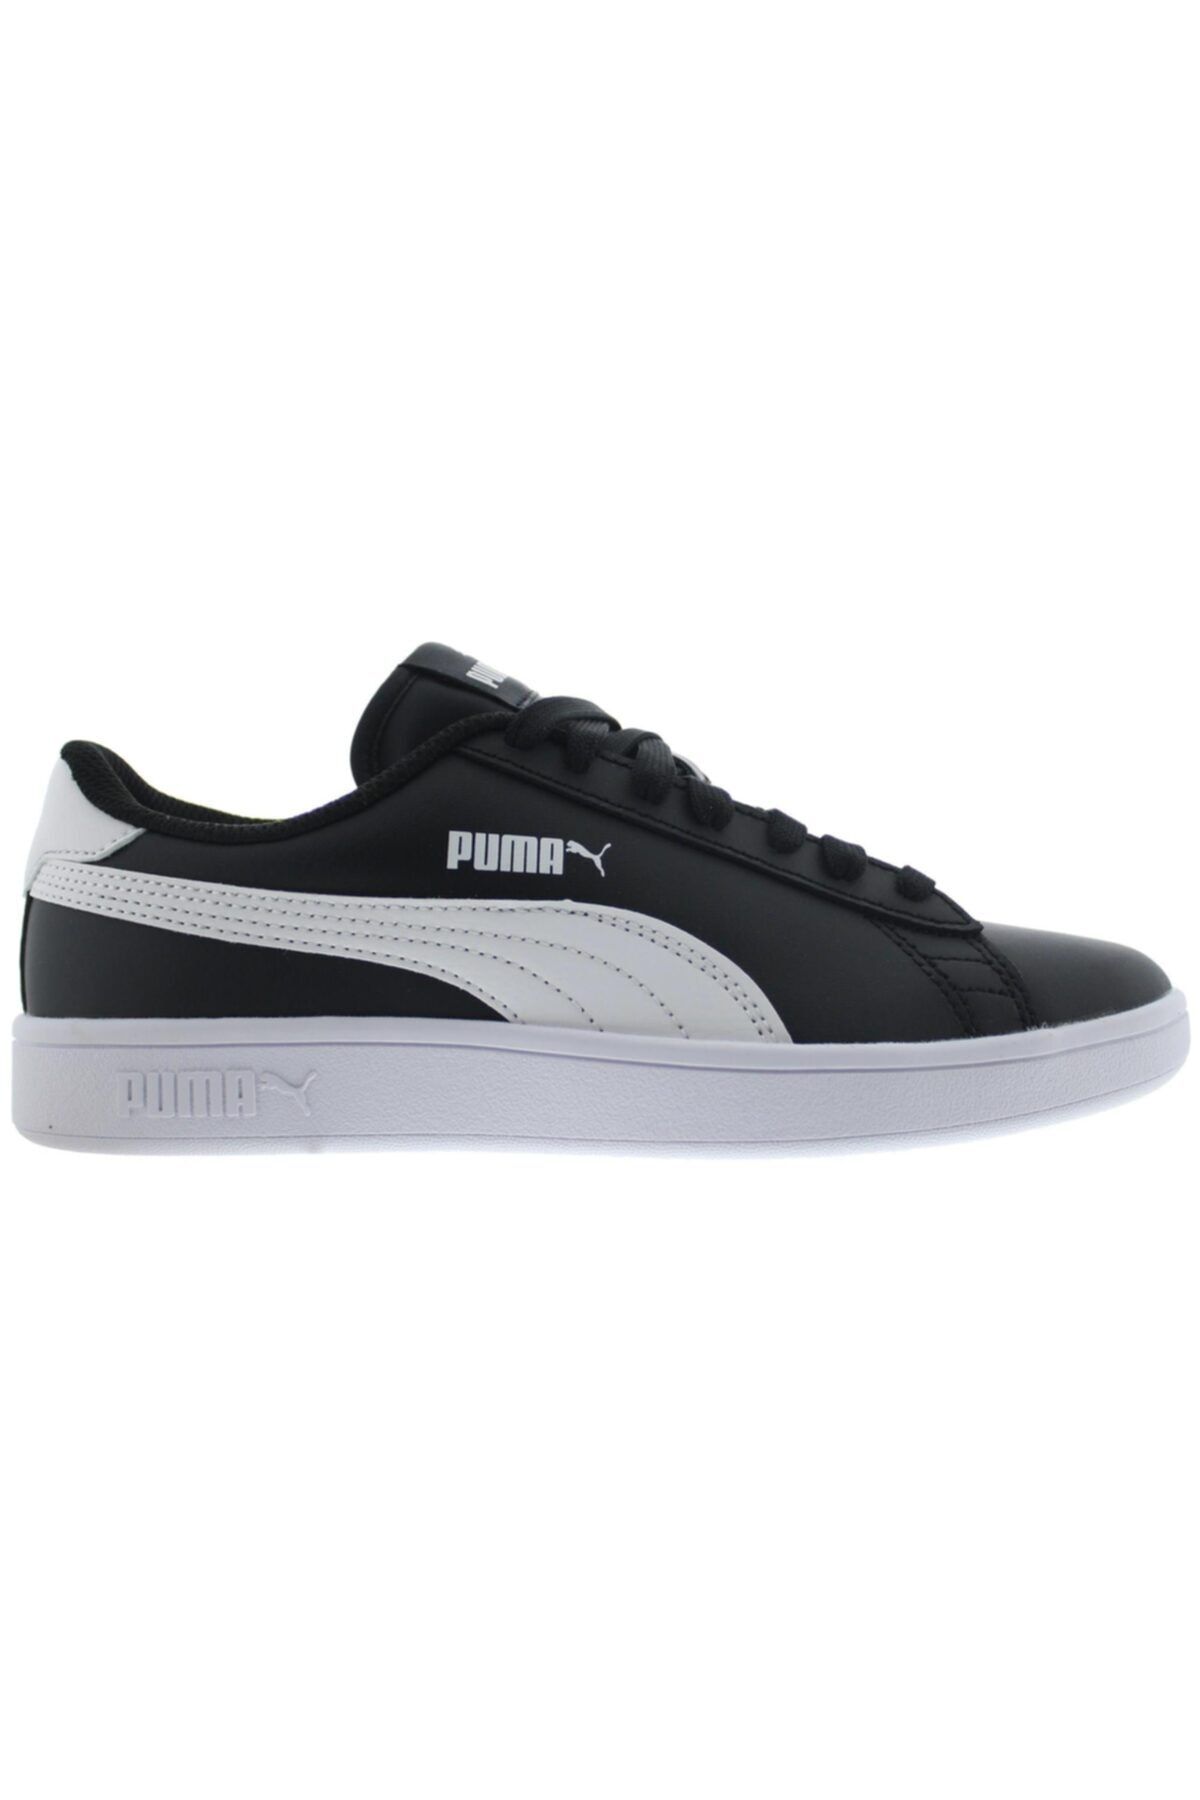 Puma Smash V2 L Jr Siyah Beyaz Kadın Sneaker Ayakkabı 100348757